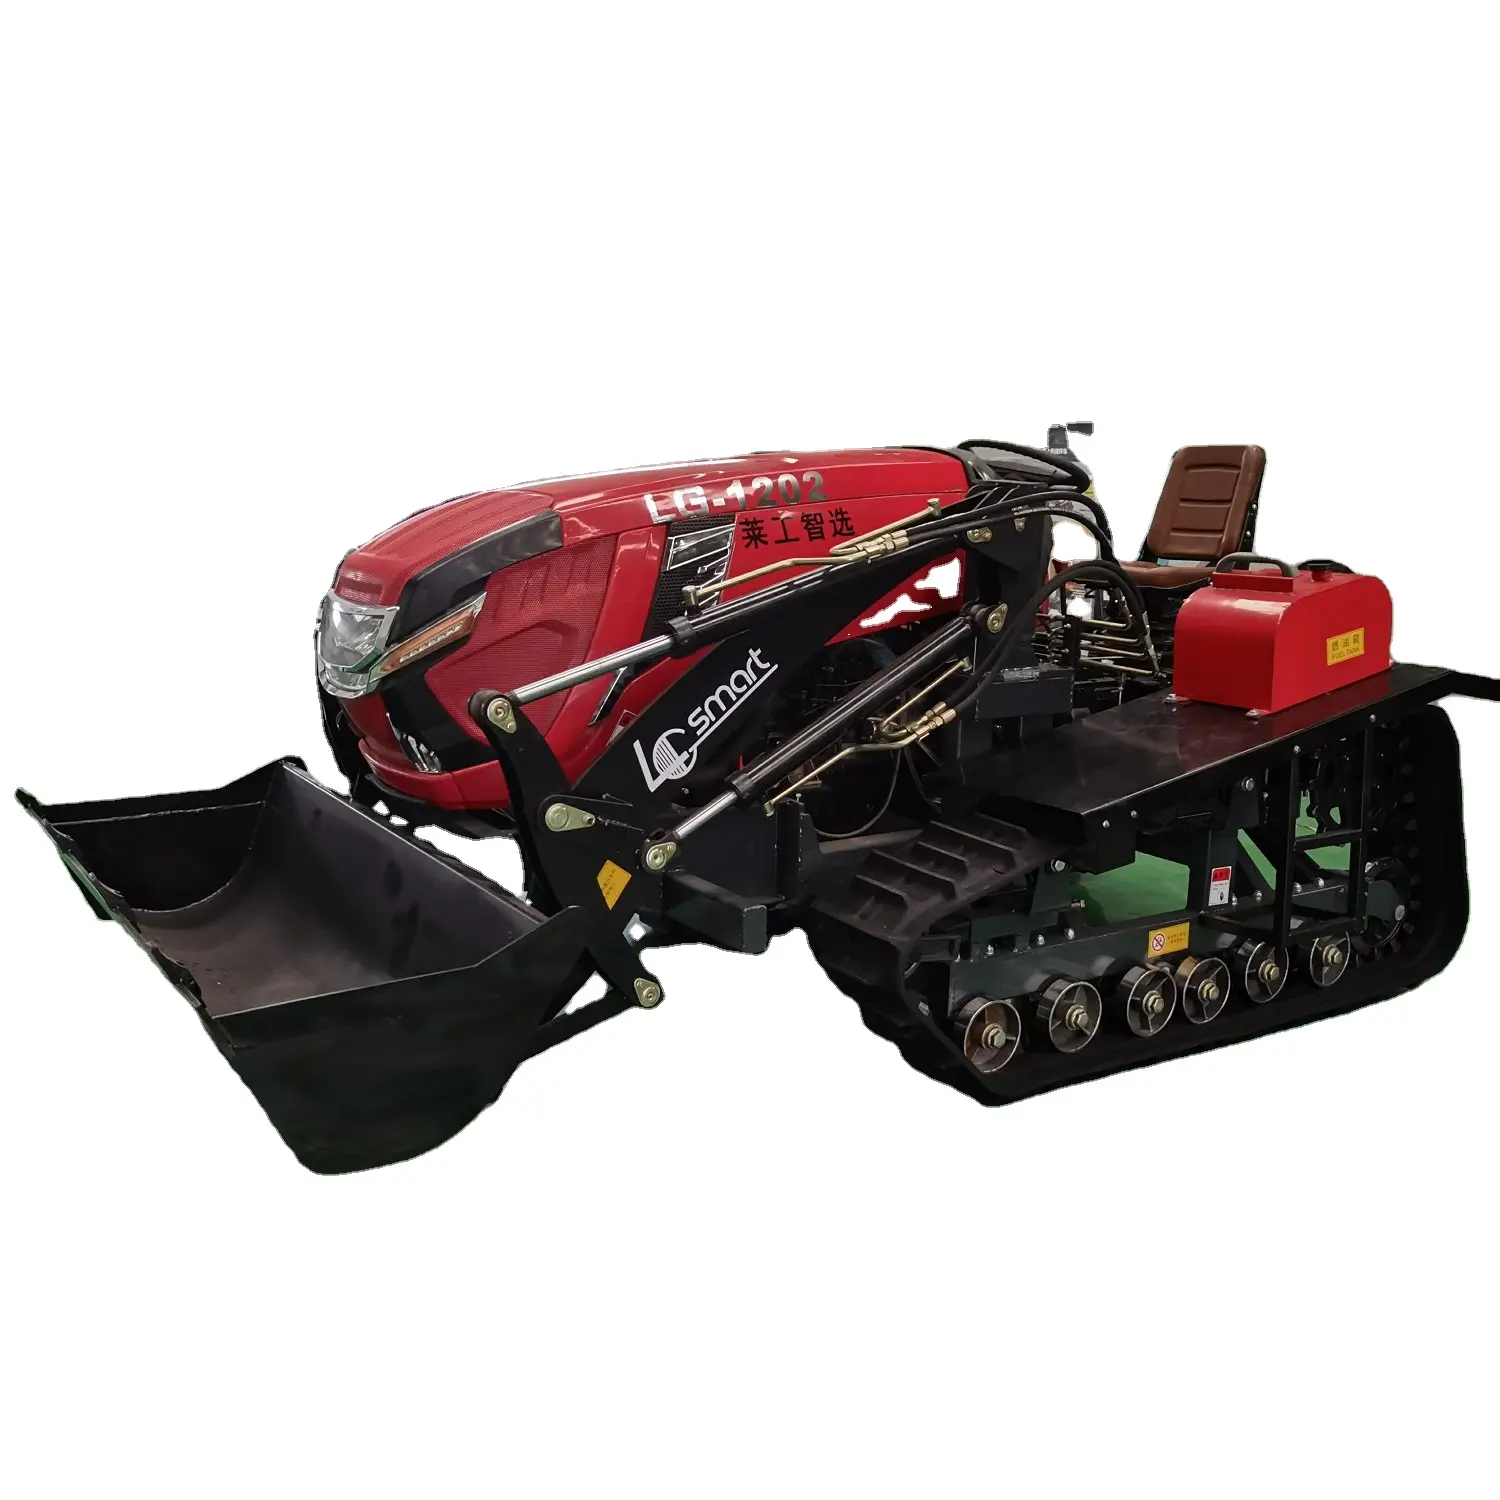 Dieselmotor Tractor Met Epa Voor Boerderij Gebruik Landbouwmachine Laigong Crawler Tractoren Landbouw Mini Rubber Emmer 1300